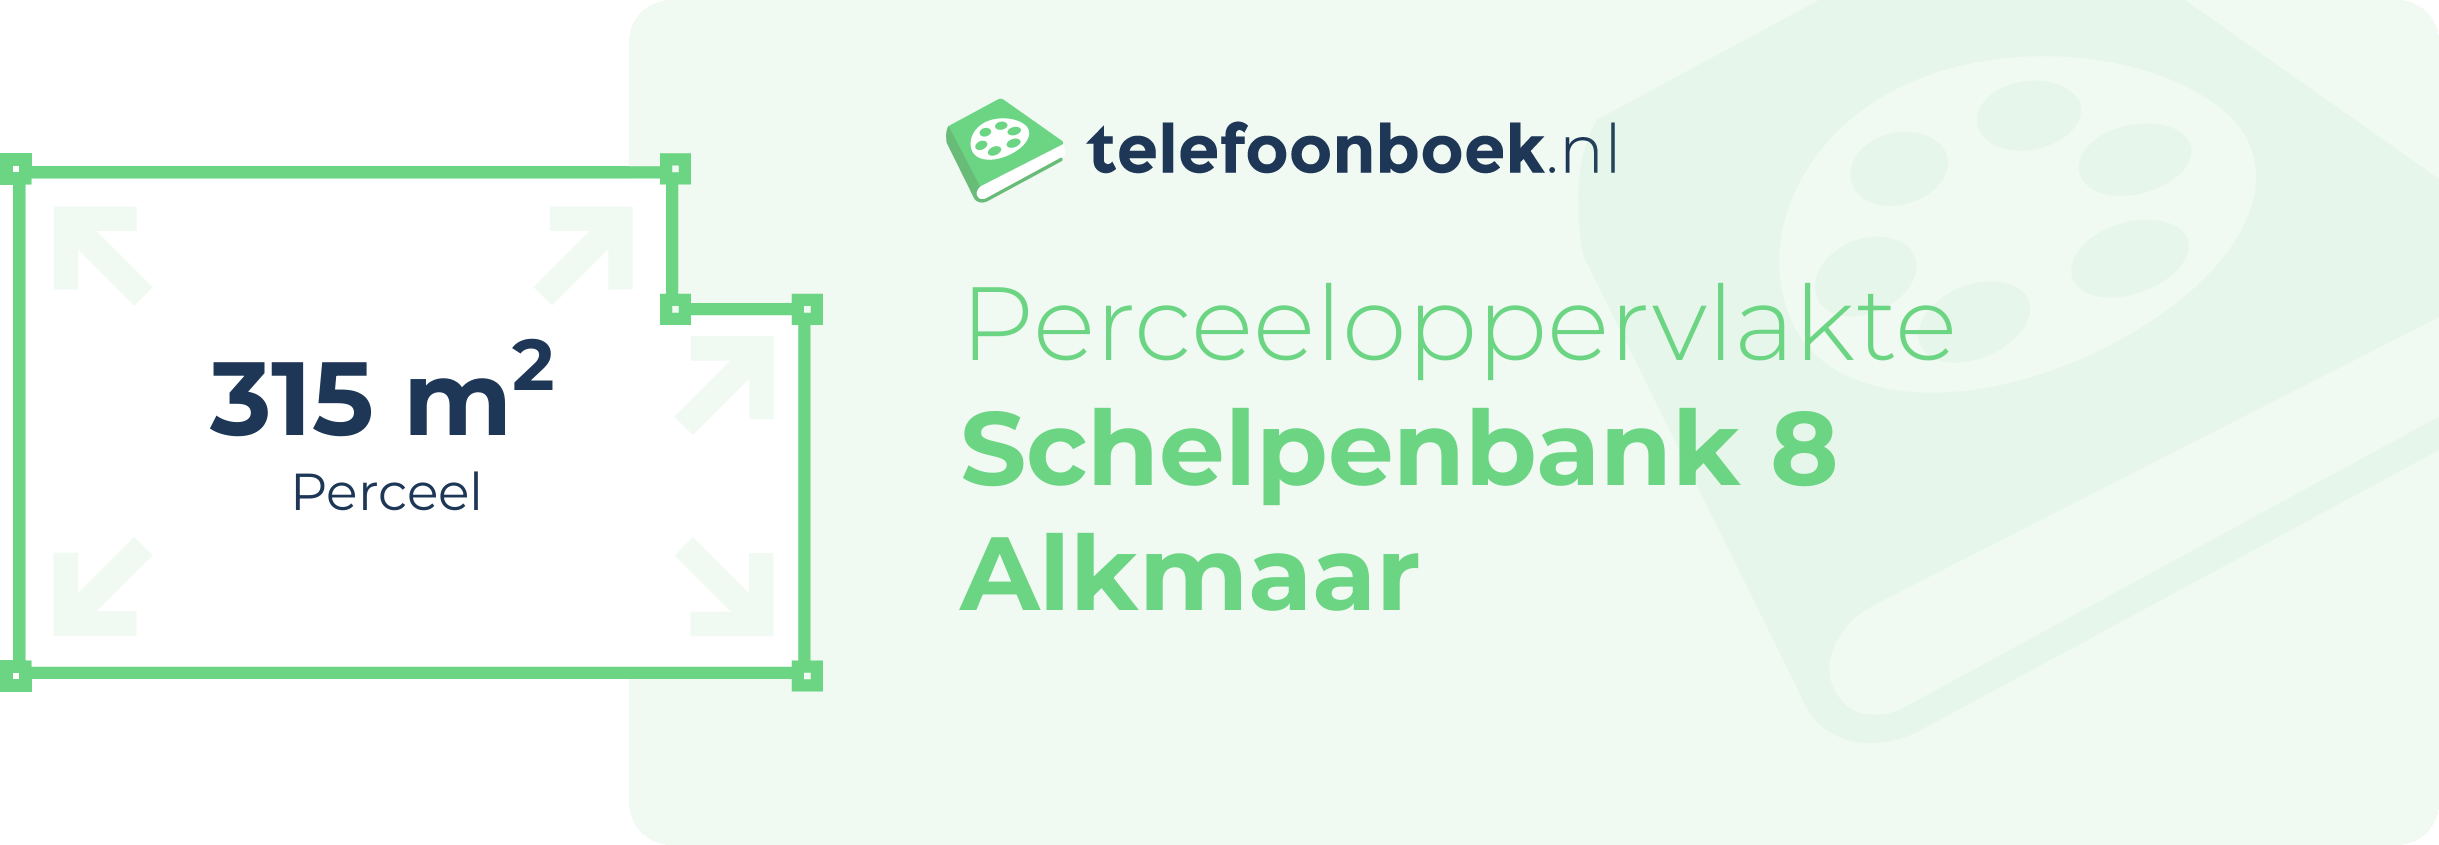 Perceeloppervlakte Schelpenbank 8 Alkmaar